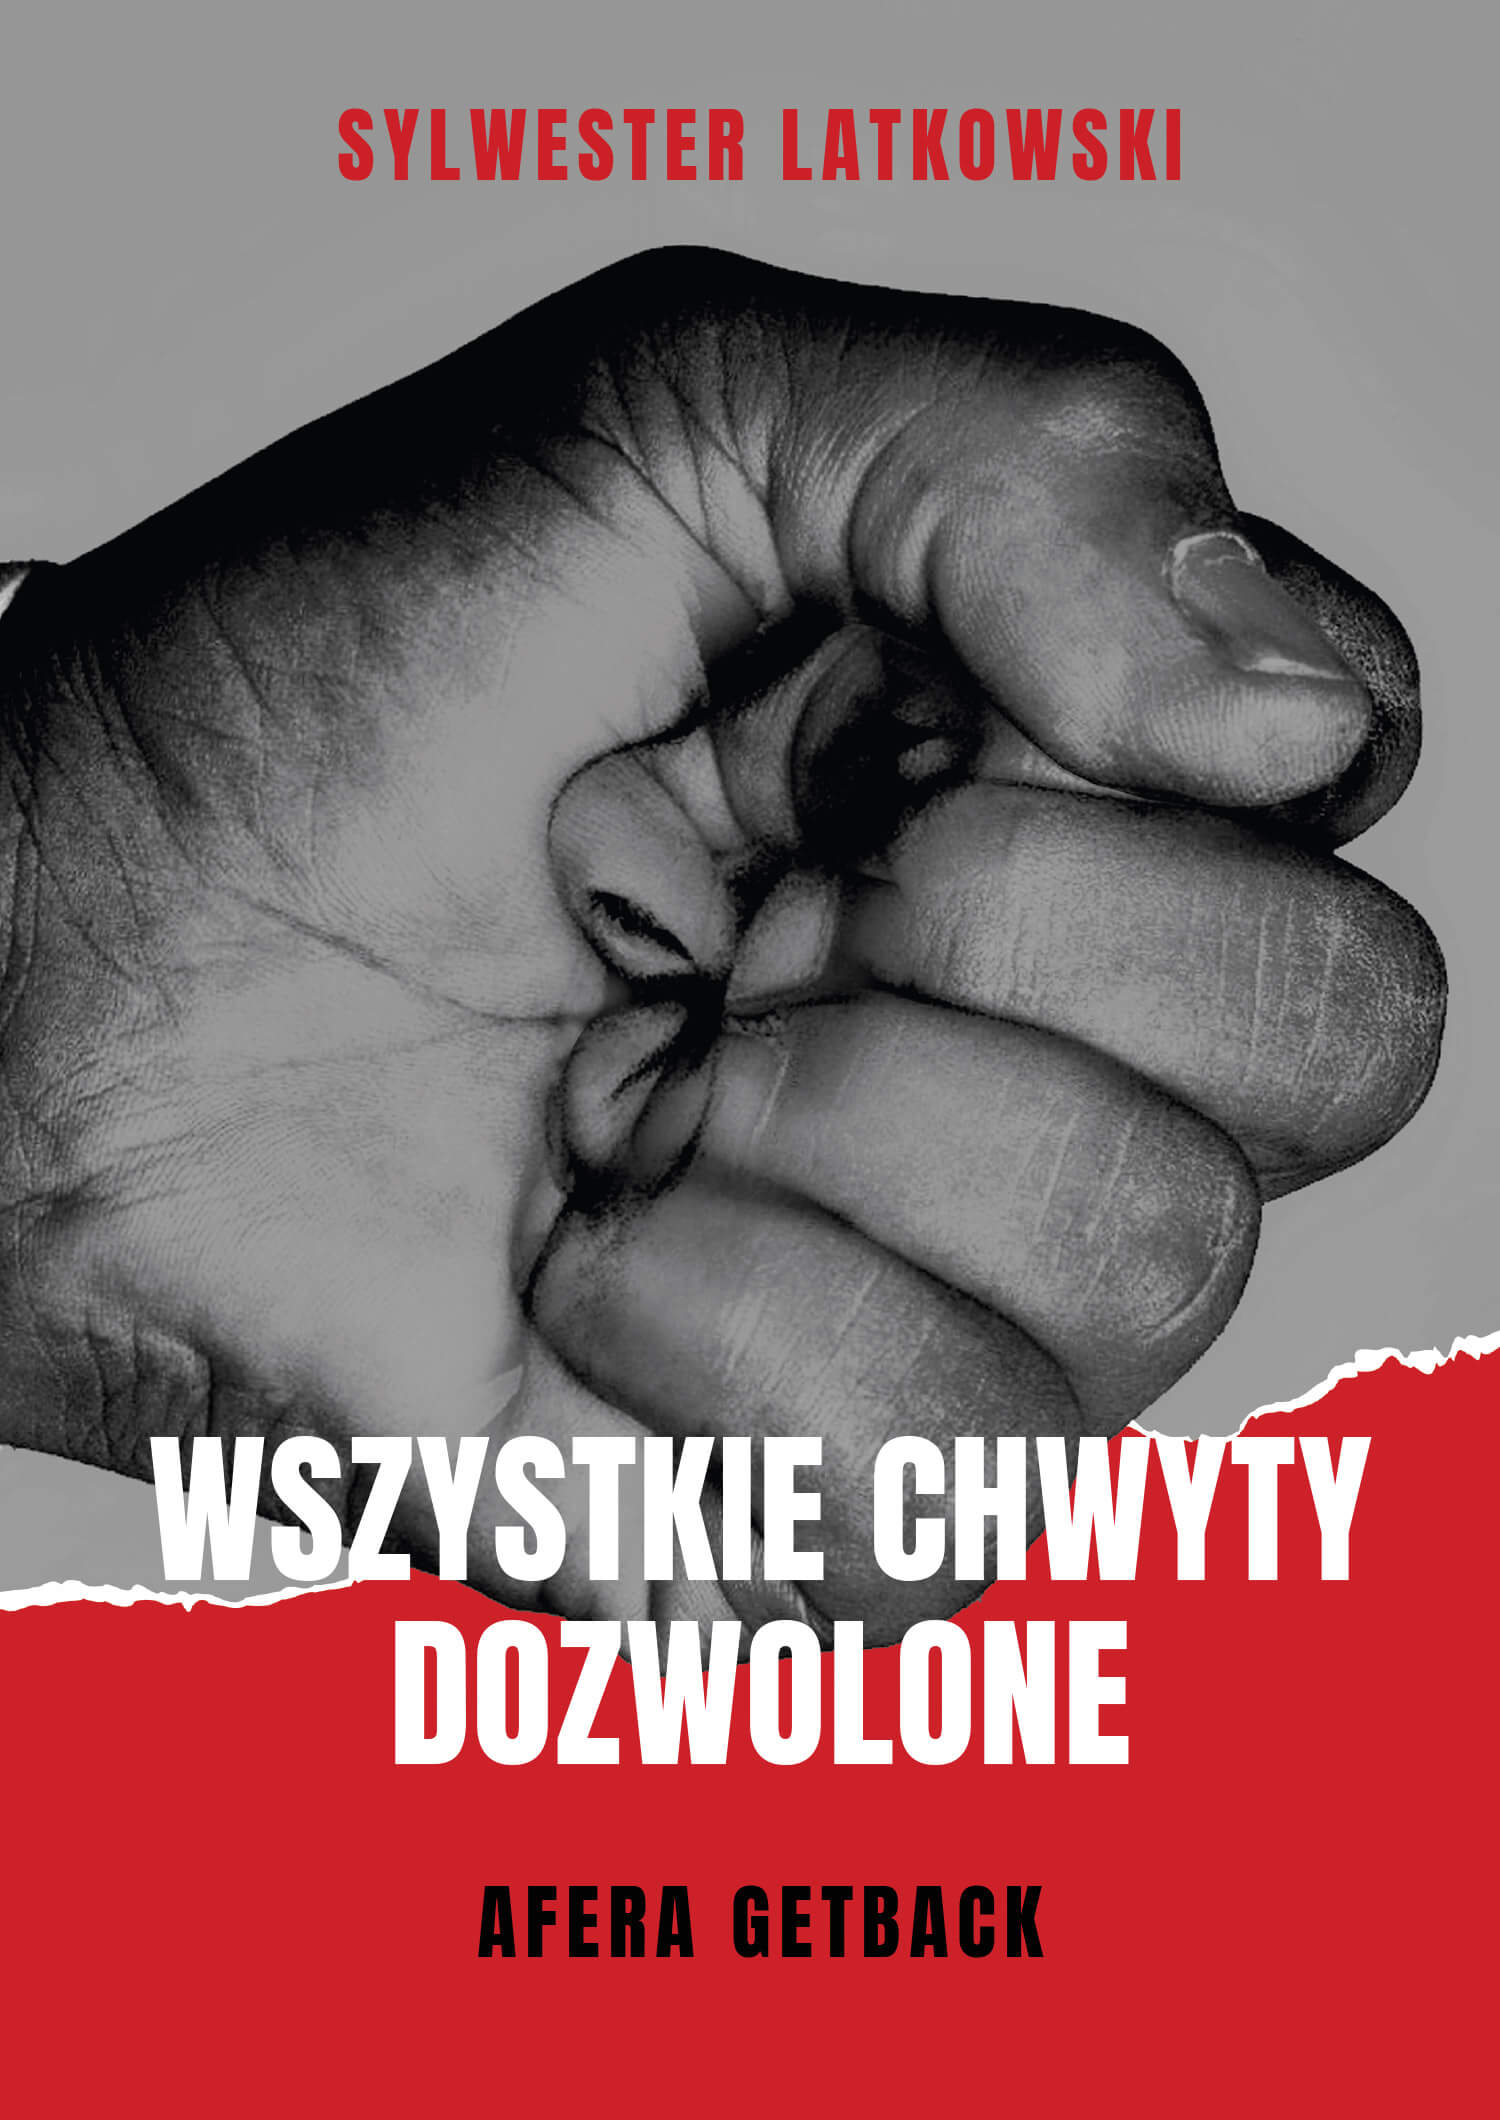 GetBack-Syndyk-Wroclaw-Latkowski-Czarnecki-Abris.jpg